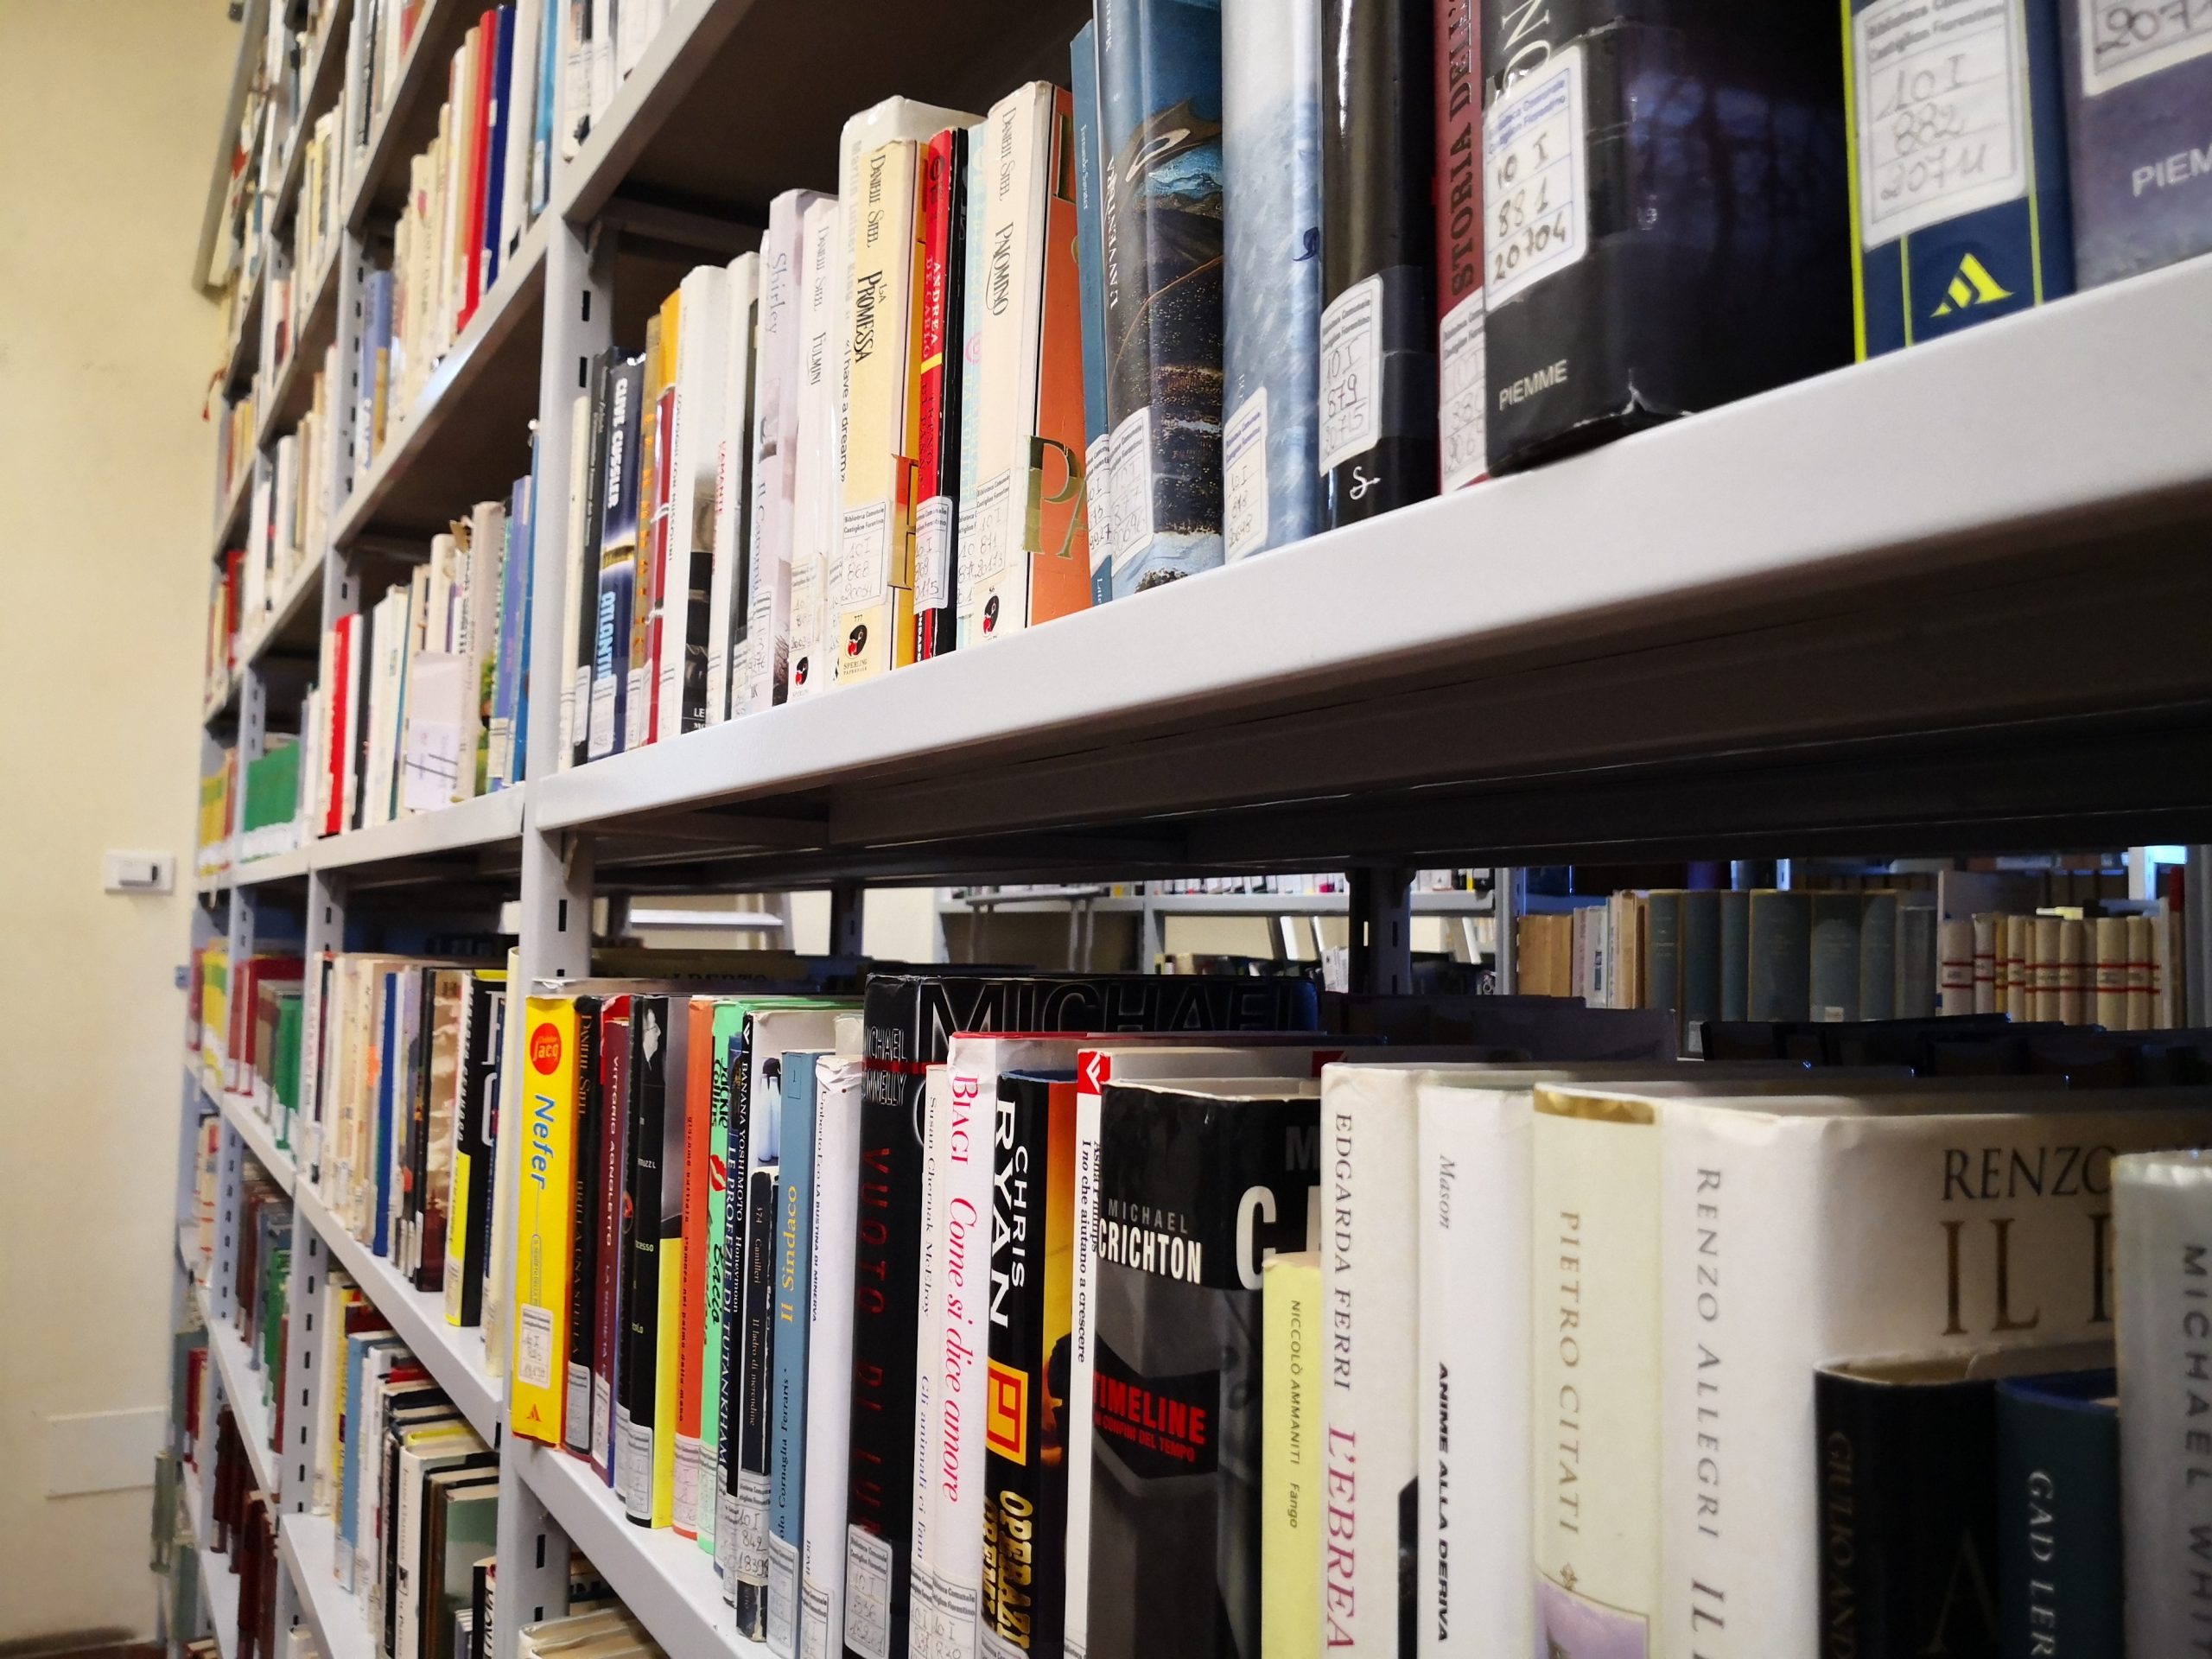 Grazie alla partecipazione al bando del MIBACT la biblioteca comunale potrà usufruire di un contributo straordinario di 10.000 euro per l’acquisto di nuovi libri